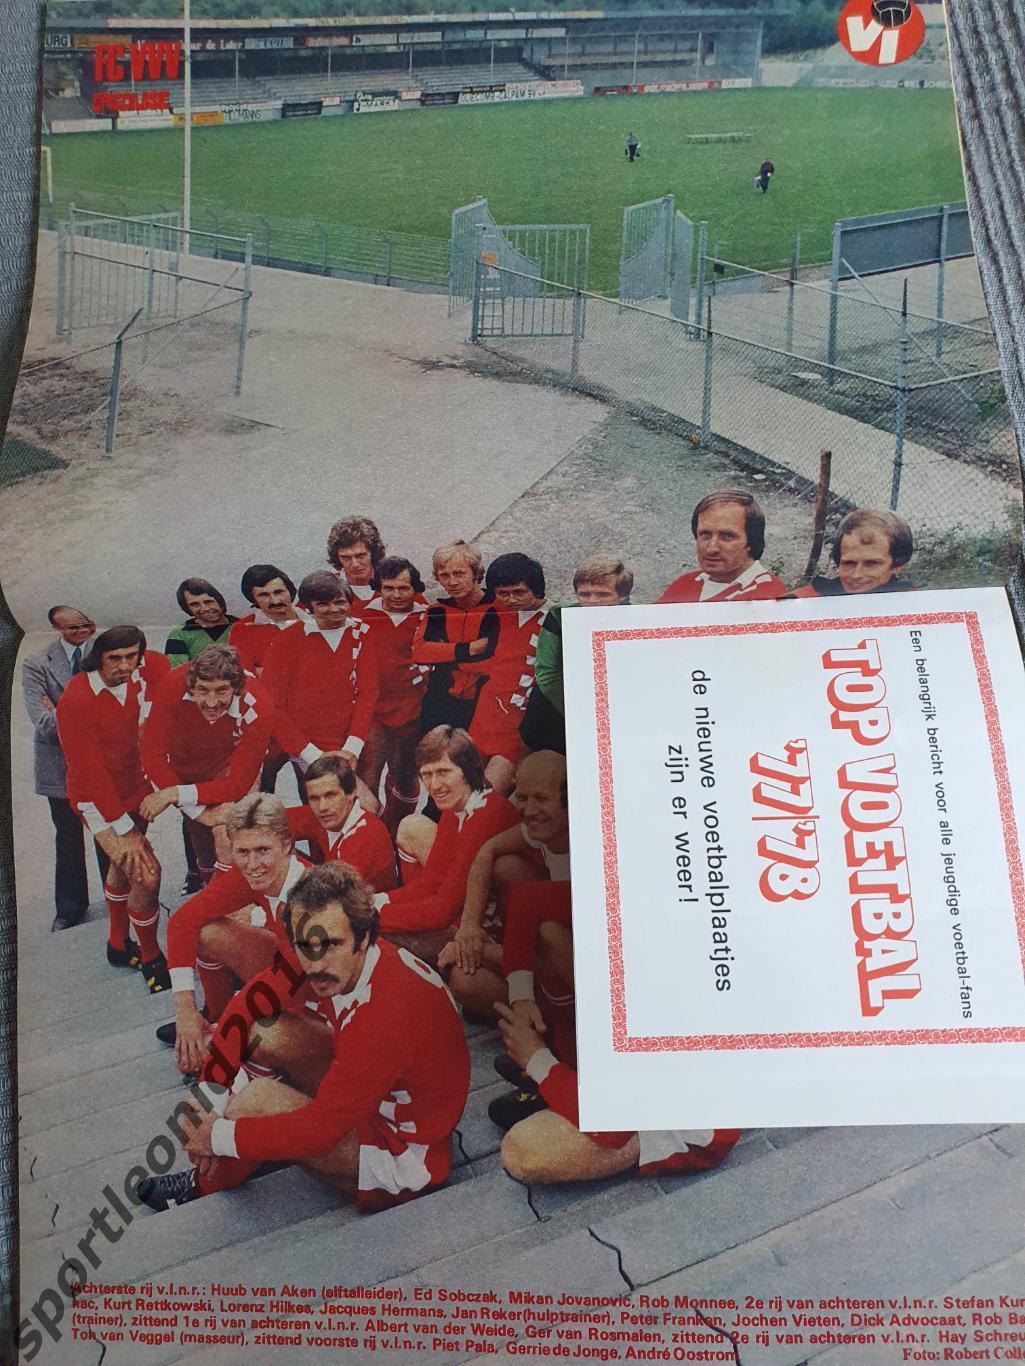 Voetbal International 1977 51 выпуск годовая подписка .3 5